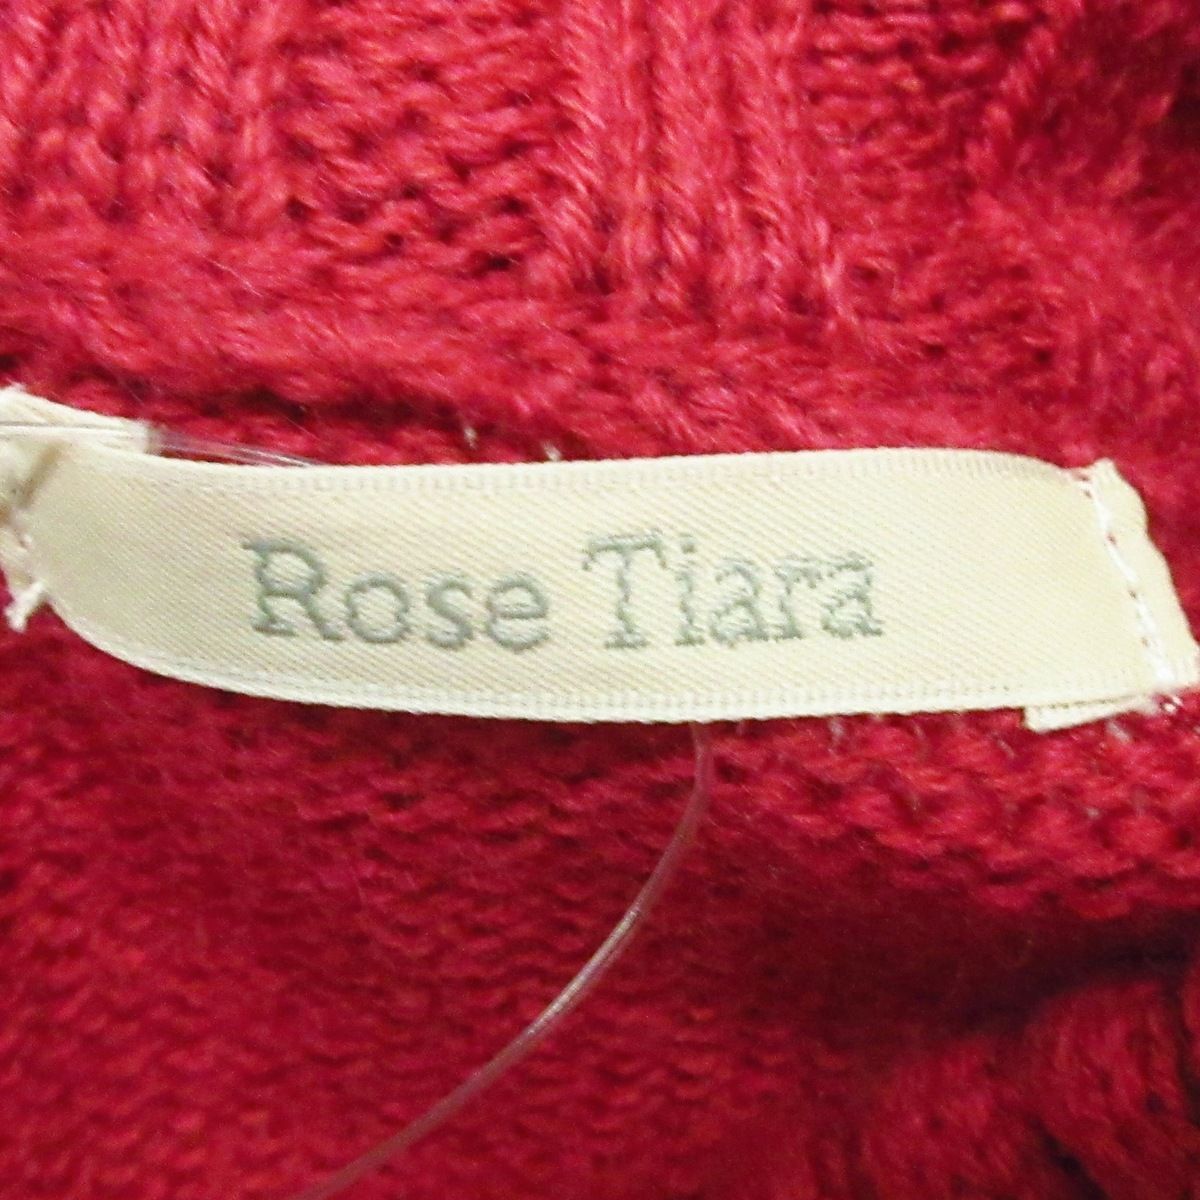 Rose Tiara(ローズティアラ) 長袖セーター サイズ42 L レディース 